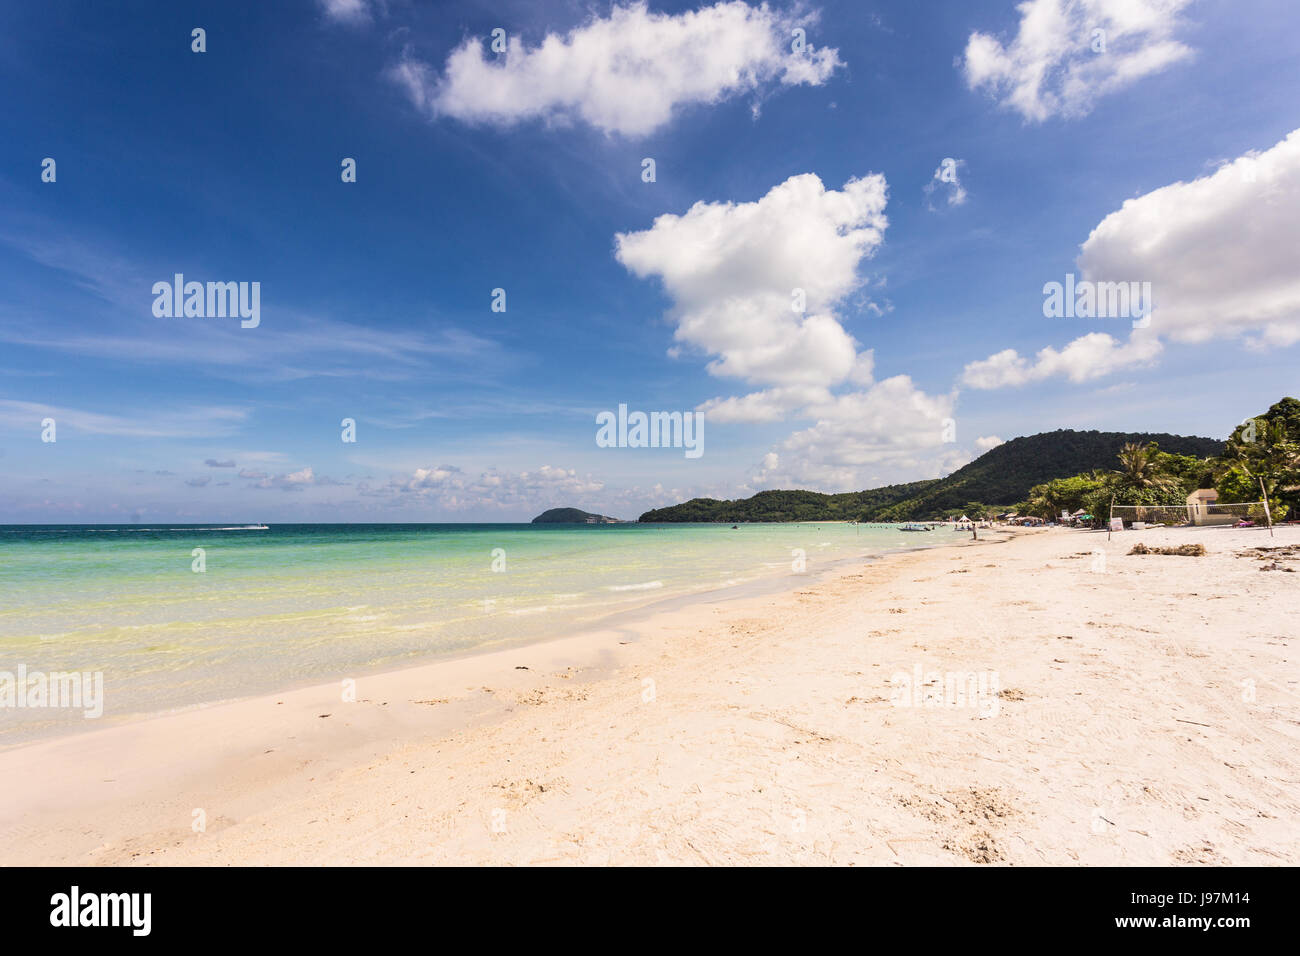 Splendide spiagge di sabbia bianca nome Bai Sao beach in l'isola di Phu Quoc in Vietnam del sud nel Golfo di Thailandia. Foto Stock